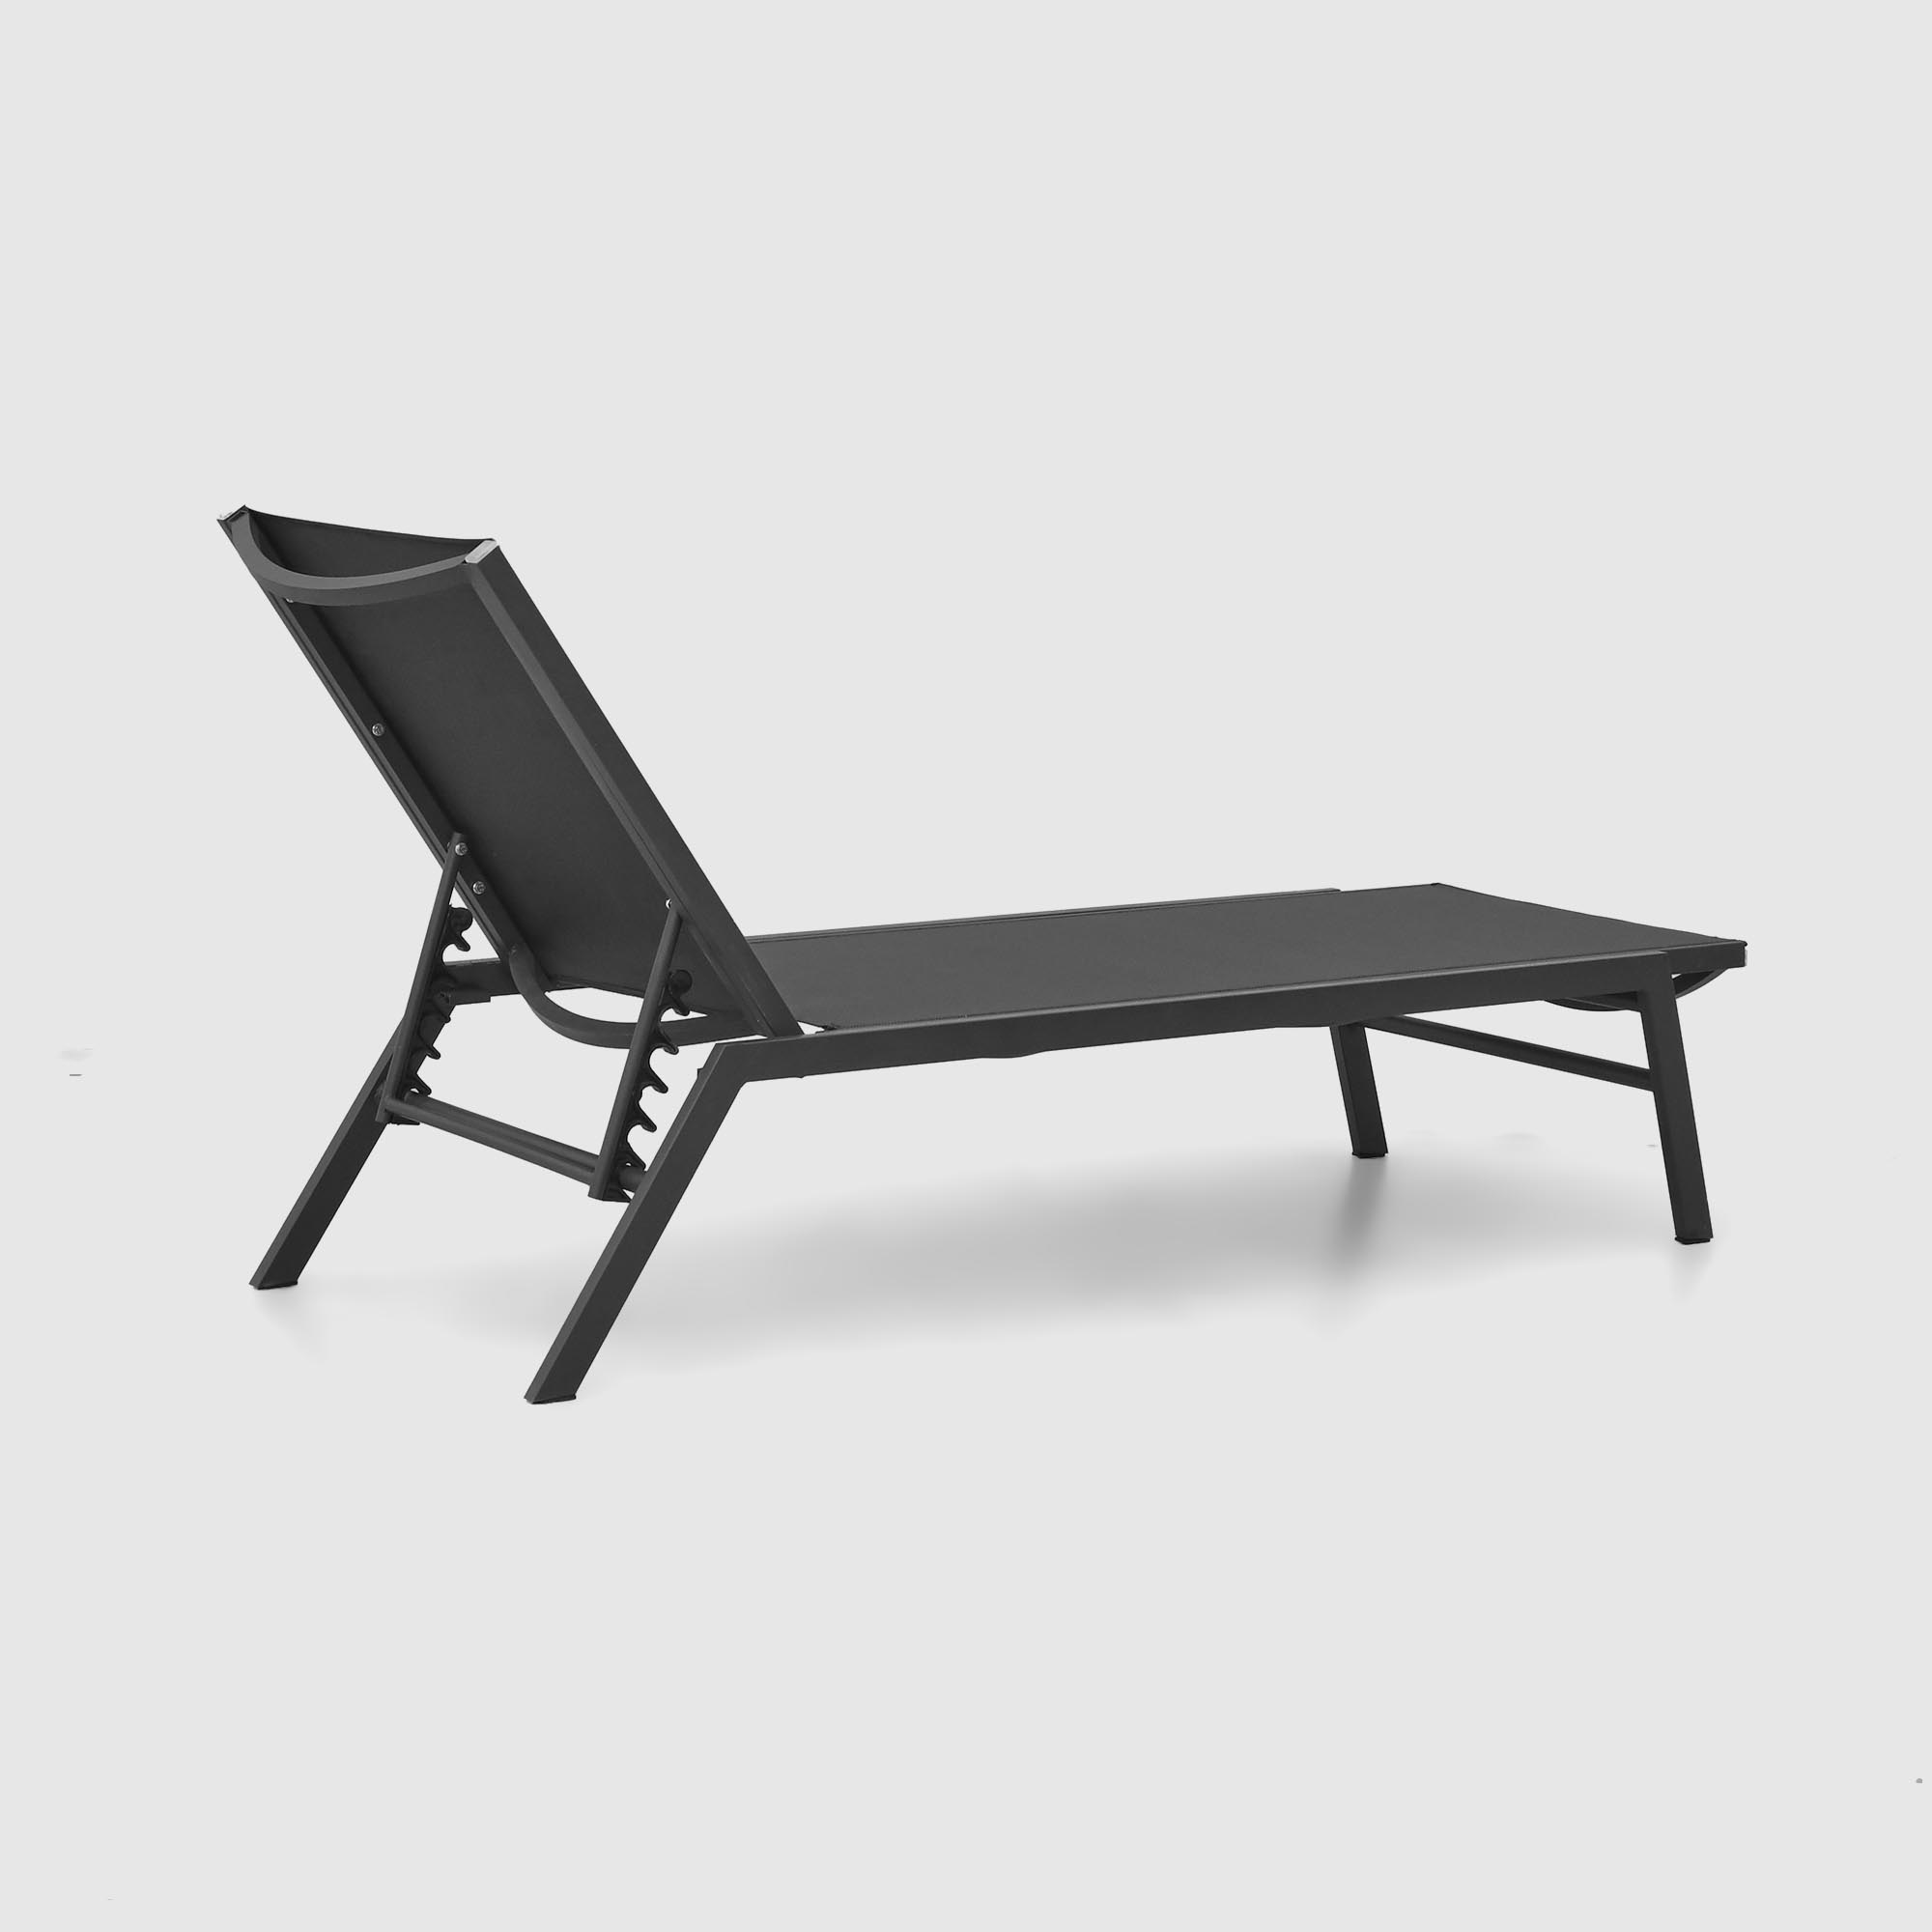 Комплект мебели Emek garden столик и два шезлонга 3 предмета, цвет черный - фото 3